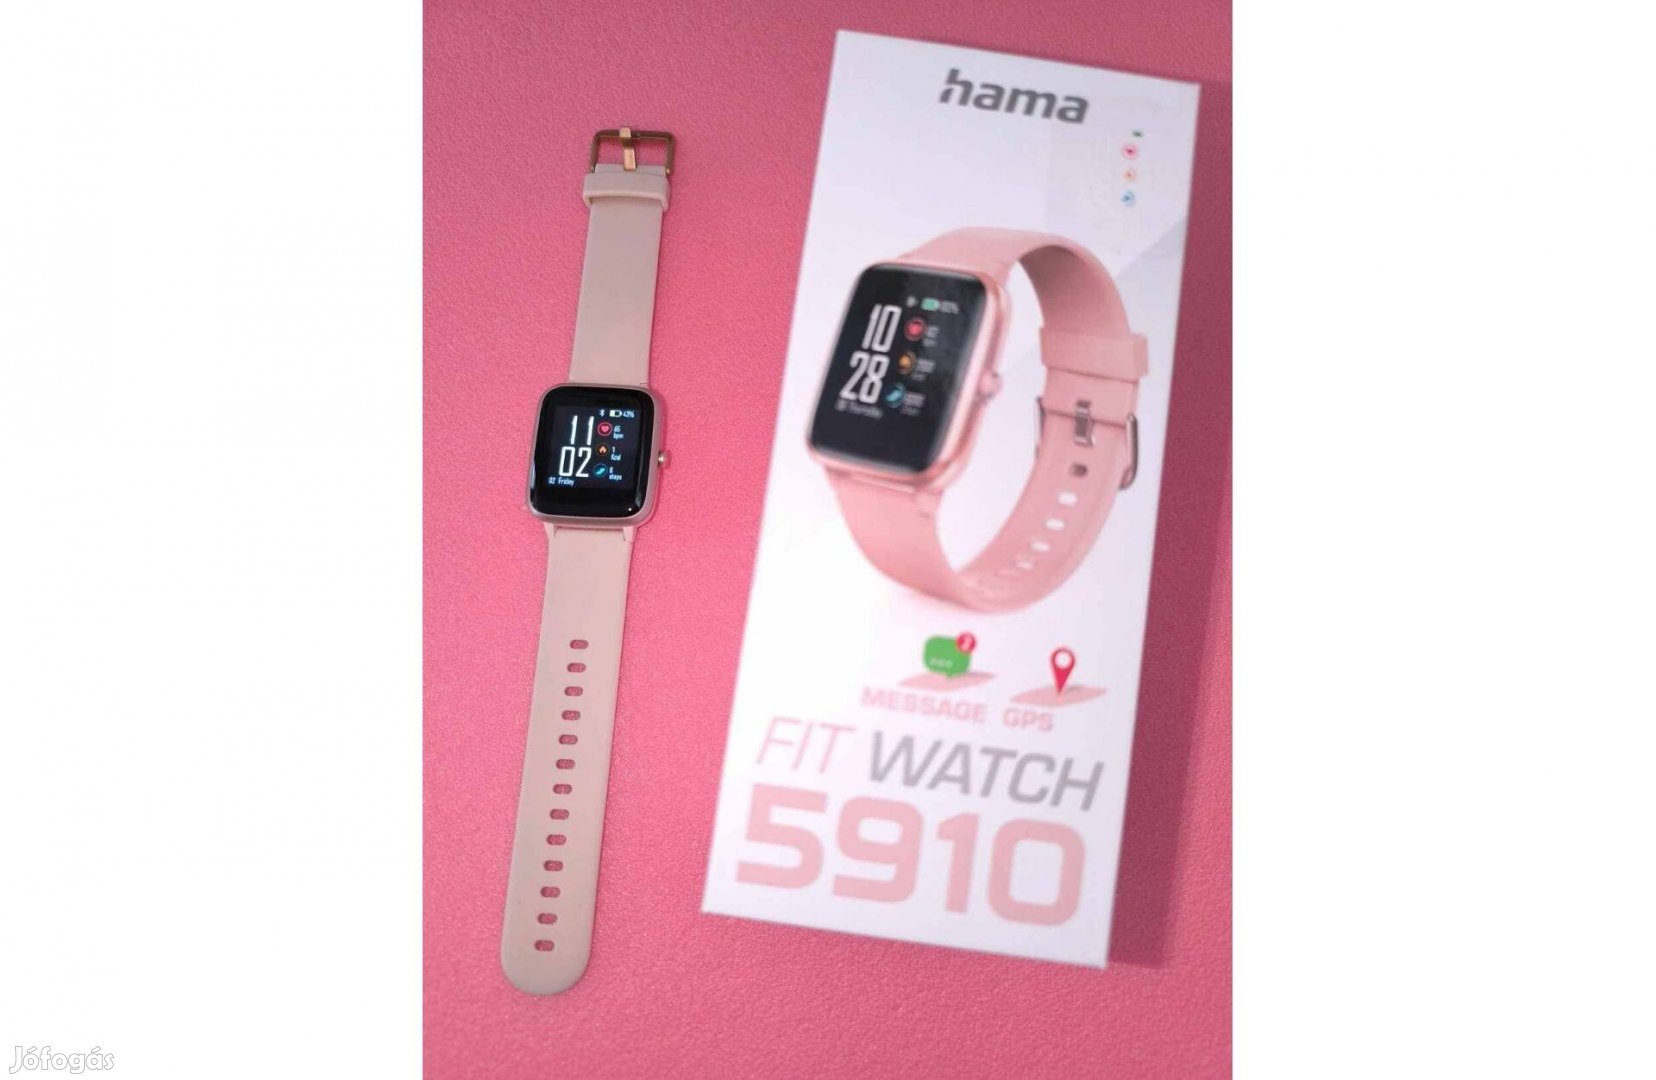 Hama Fit Watch 5910 okosóra, aktivitásmérő - Garanciális